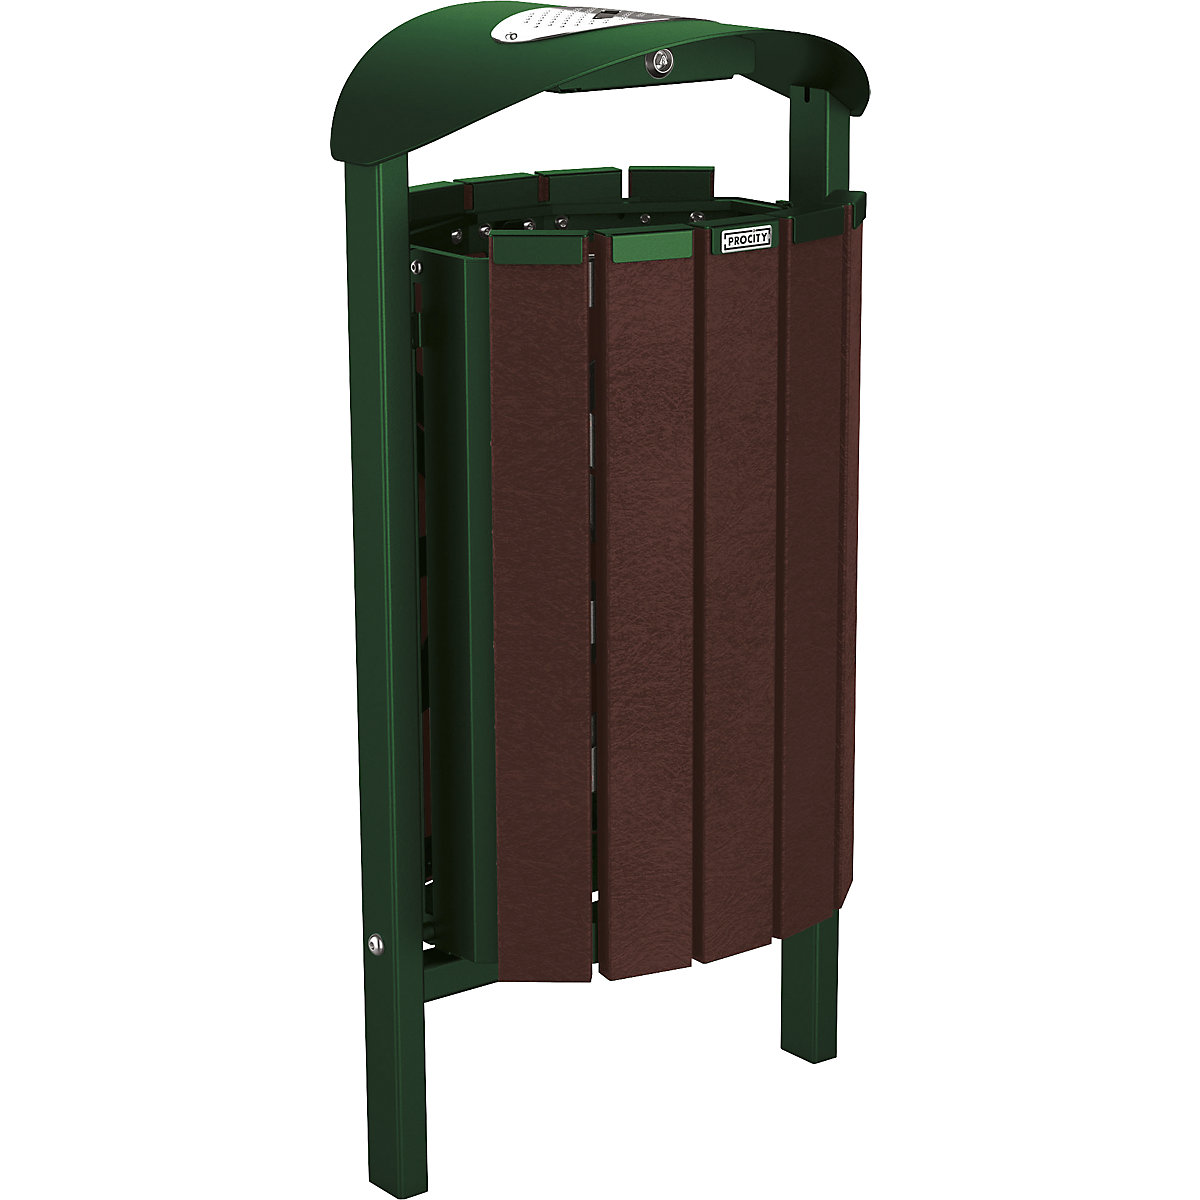 Afvalkorf SILAOS® met asbak – PROCITY, staal / gerecyleerde kunststof, voor in gegoten beton, groen/bruin-3